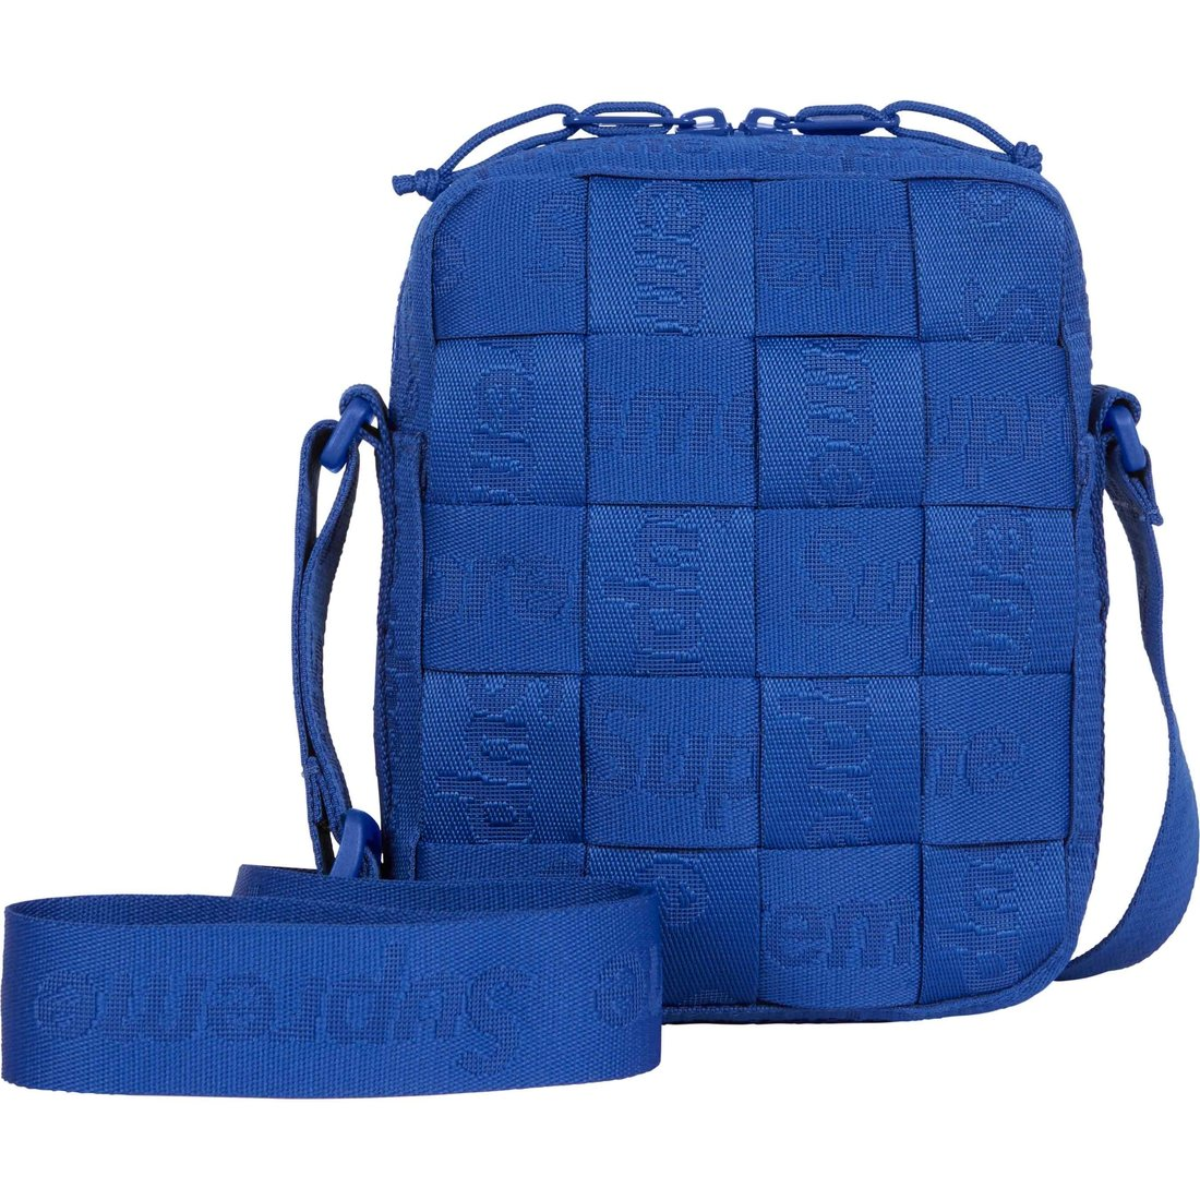 Supreme - Shoulder Bag 'Woven' Blue